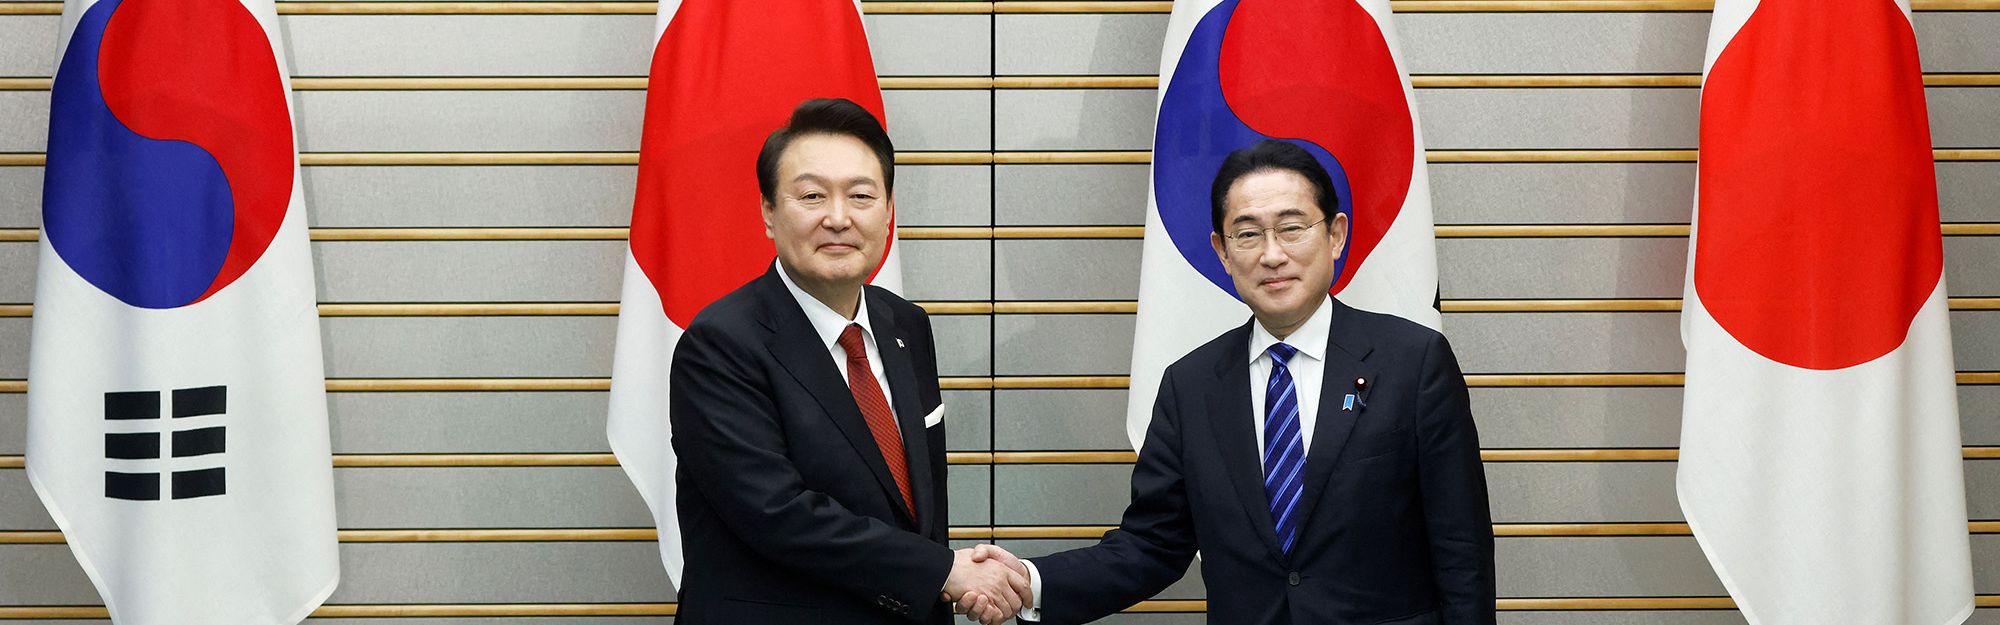 12 Sal Garl Ki Sex - Japan and South Korea agree to mend ties as leaders meet following years of  dispute | CNN